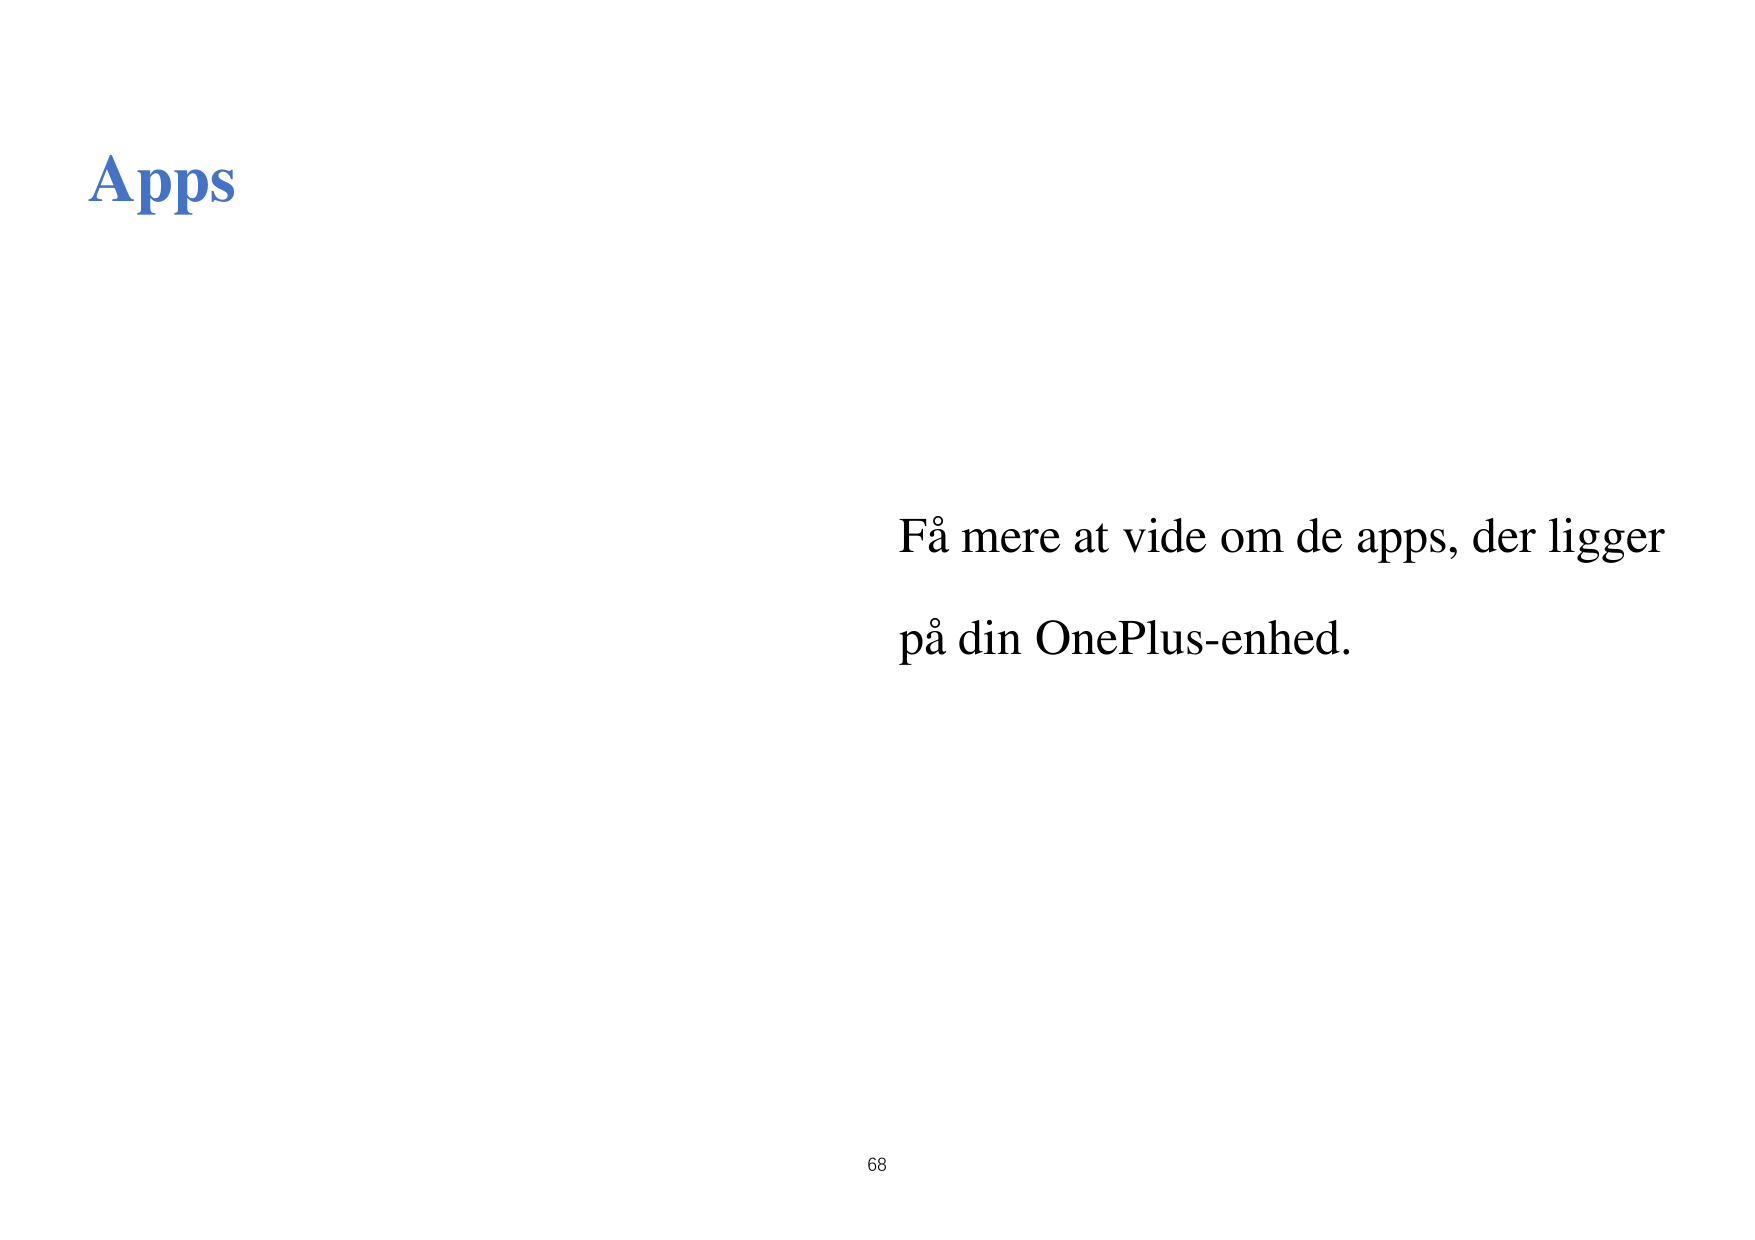 AppsFåmere at vide om de apps, der liggerpådin OnePlus-enhed.68